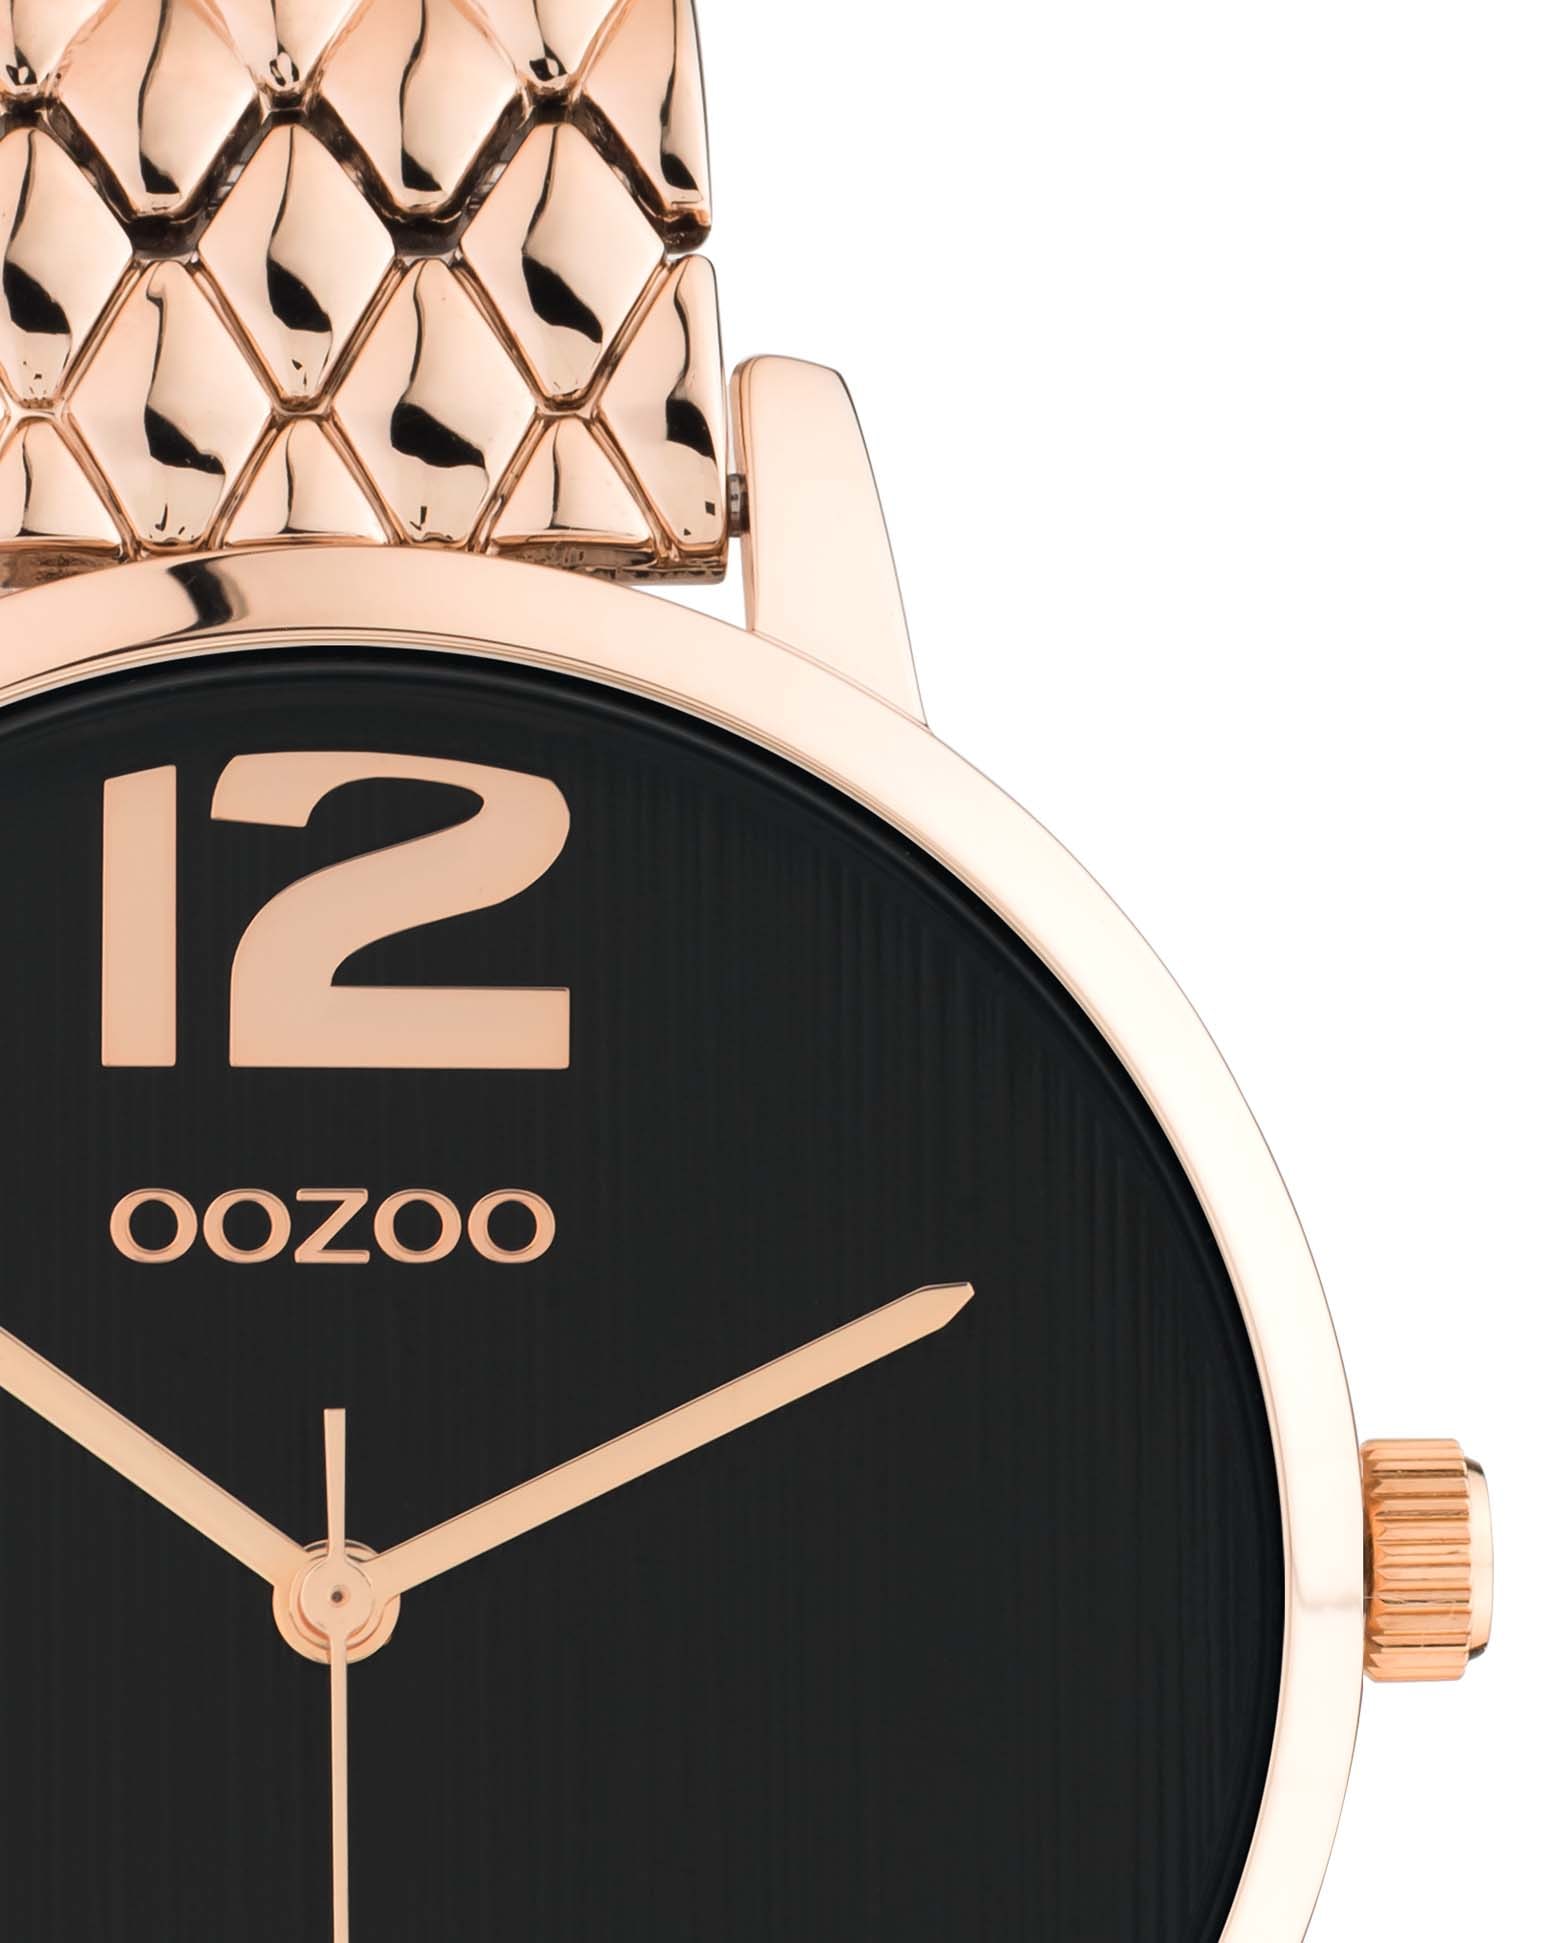 OOZOO Quarzuhr »C11024« kaufen | BAUR